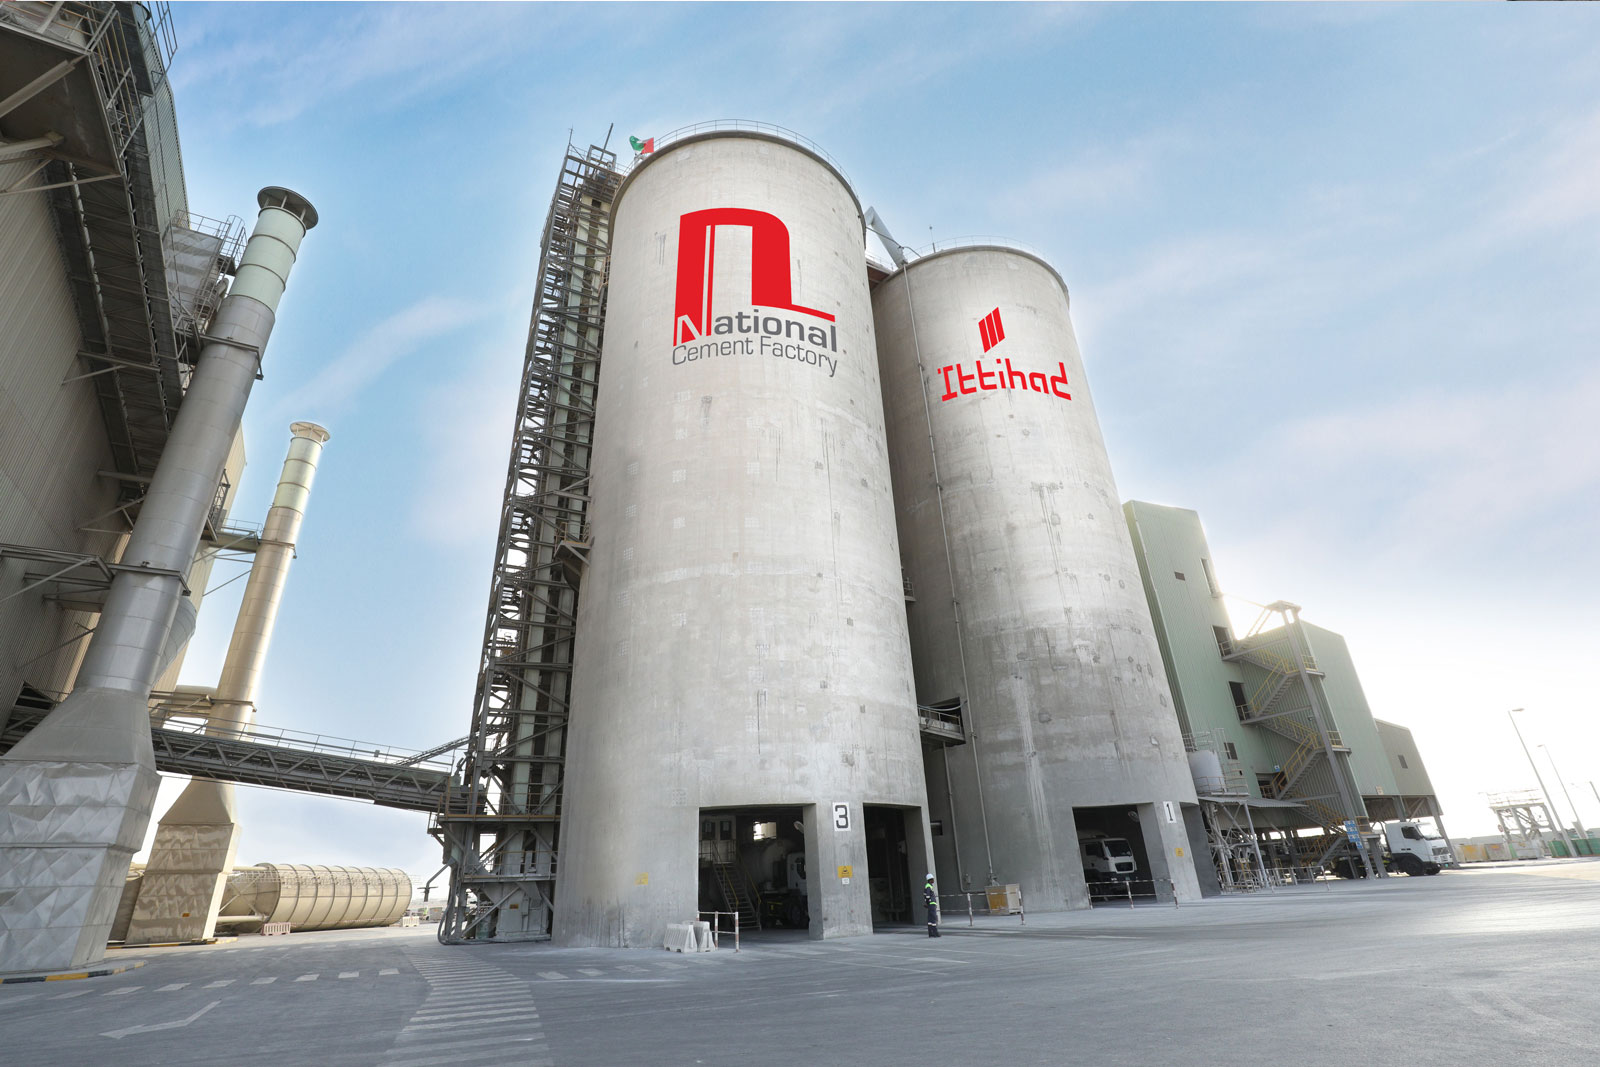 National Cement Factory – NATIONAL CEMENT FACTORY